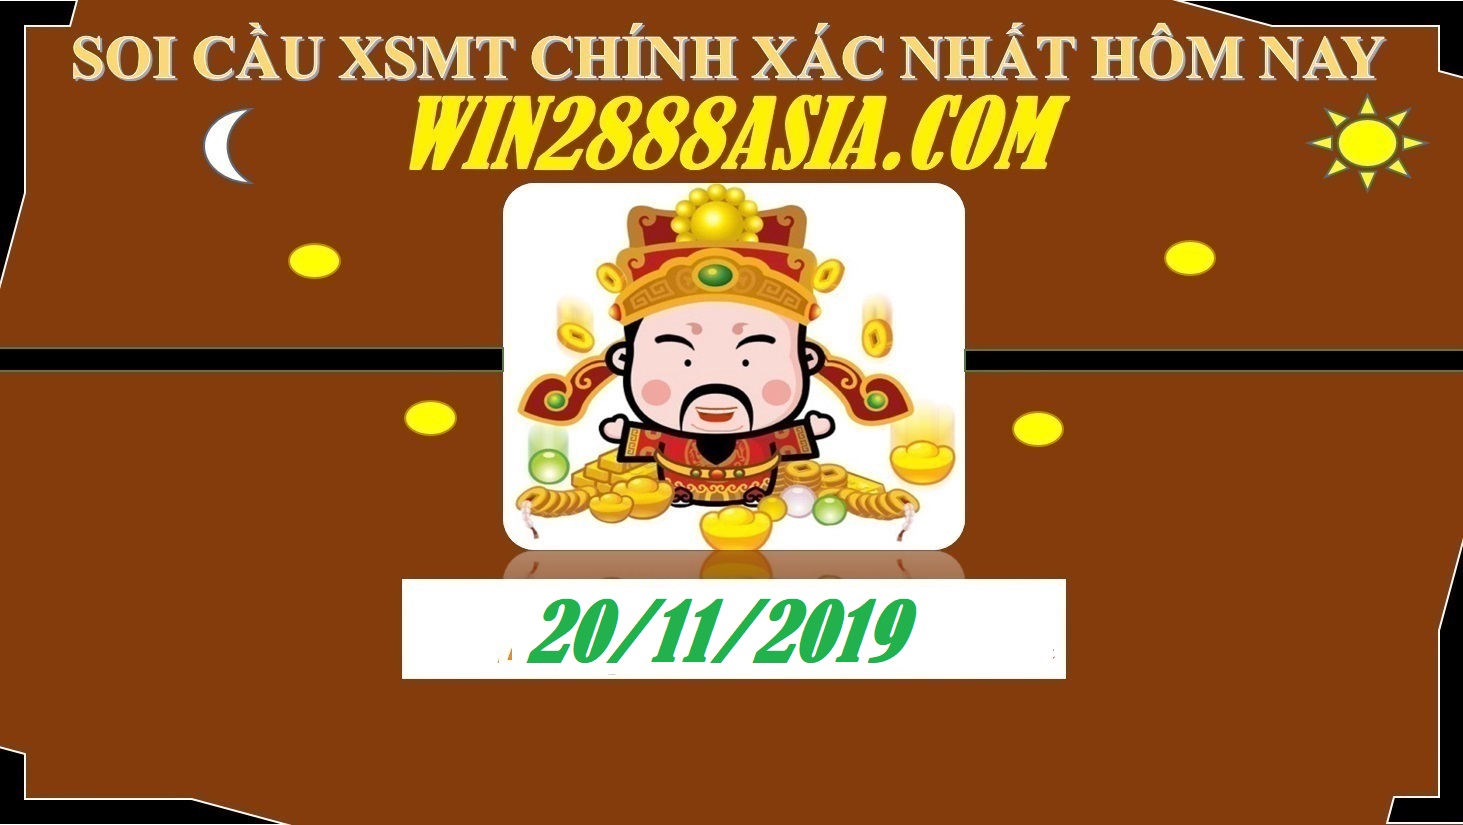 Soi cầu XSMT 20-11-2019 Win2888